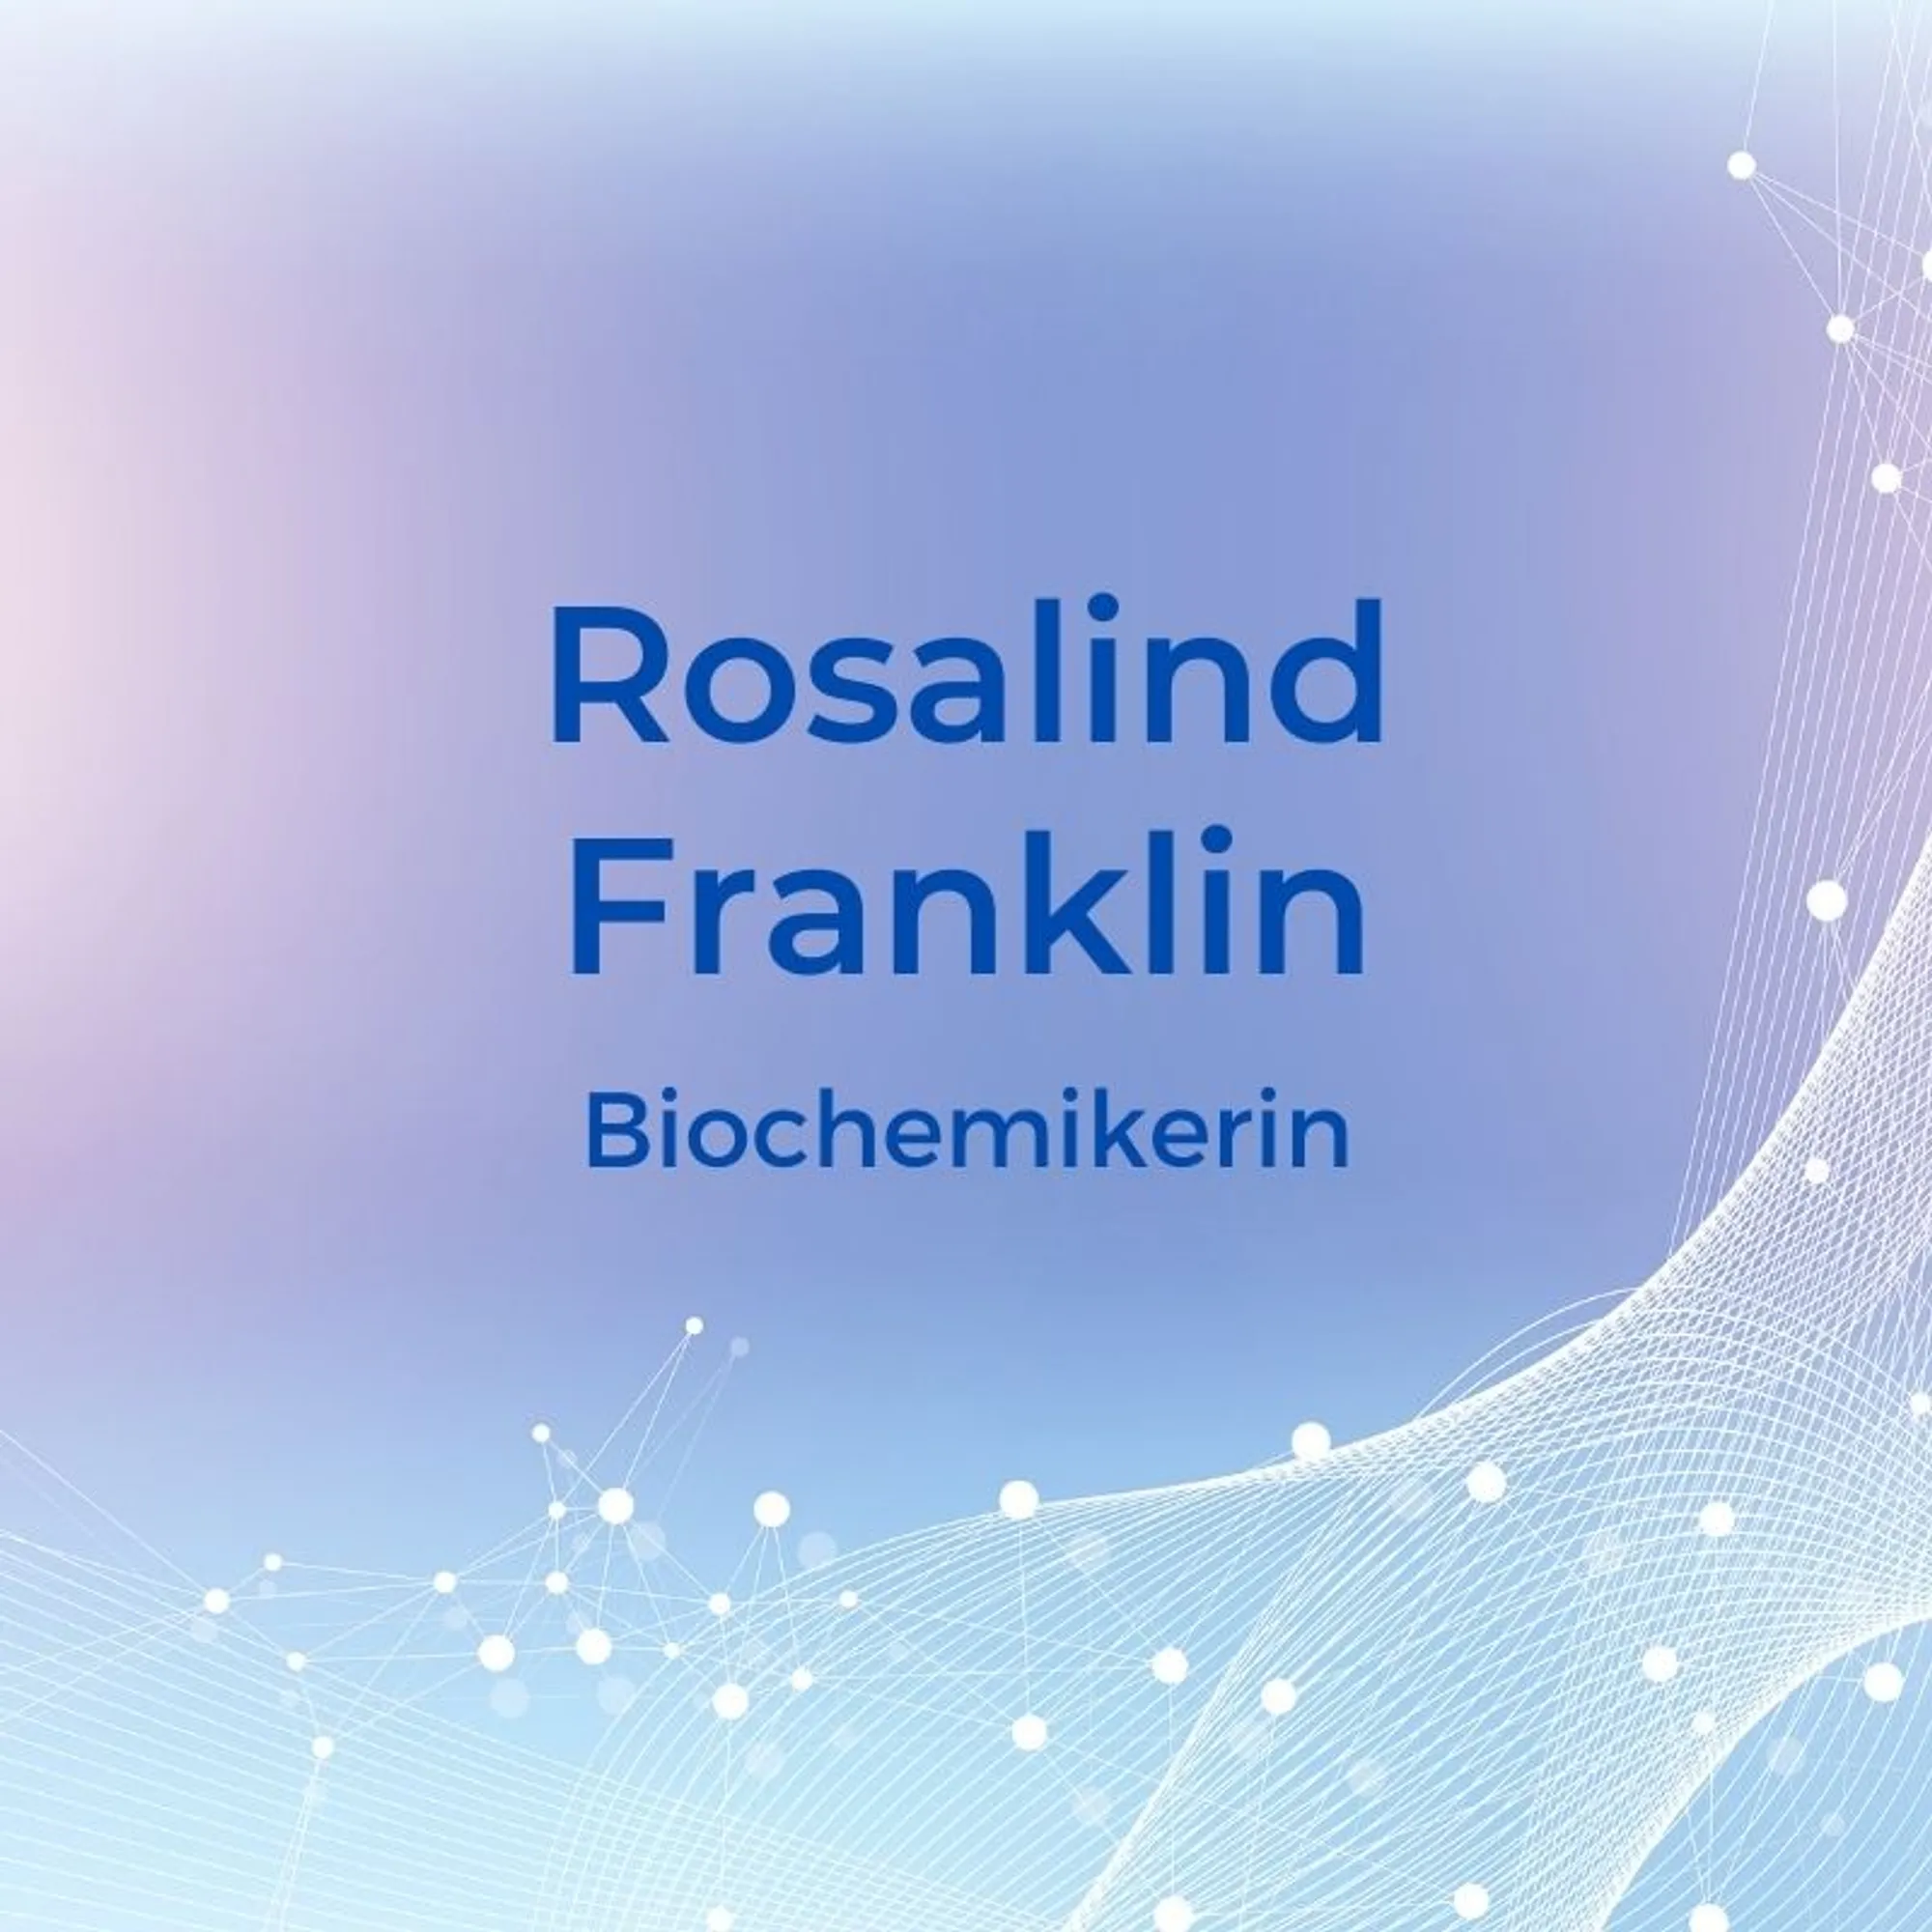 9. Rosalind Franklin (1920-1958) – BiochemikerinDie Britin Rosalind Franklin war eine anerkannte Biophysikerin und trug wesentlich zur Entdeckung der menschlichen DNA bei. Für ihre Entdeckung wurde sie allerdings nie ausgezeichnet. Stattdessen erhielten zwei Männer, Francis Crick und James Watson 1962 den Nobelpreis für die Strukturaufklärung der DNA. Sie arbeitete zudem auf dem Gebiet der Röntgenstrahlung und Molekularstruktur.
